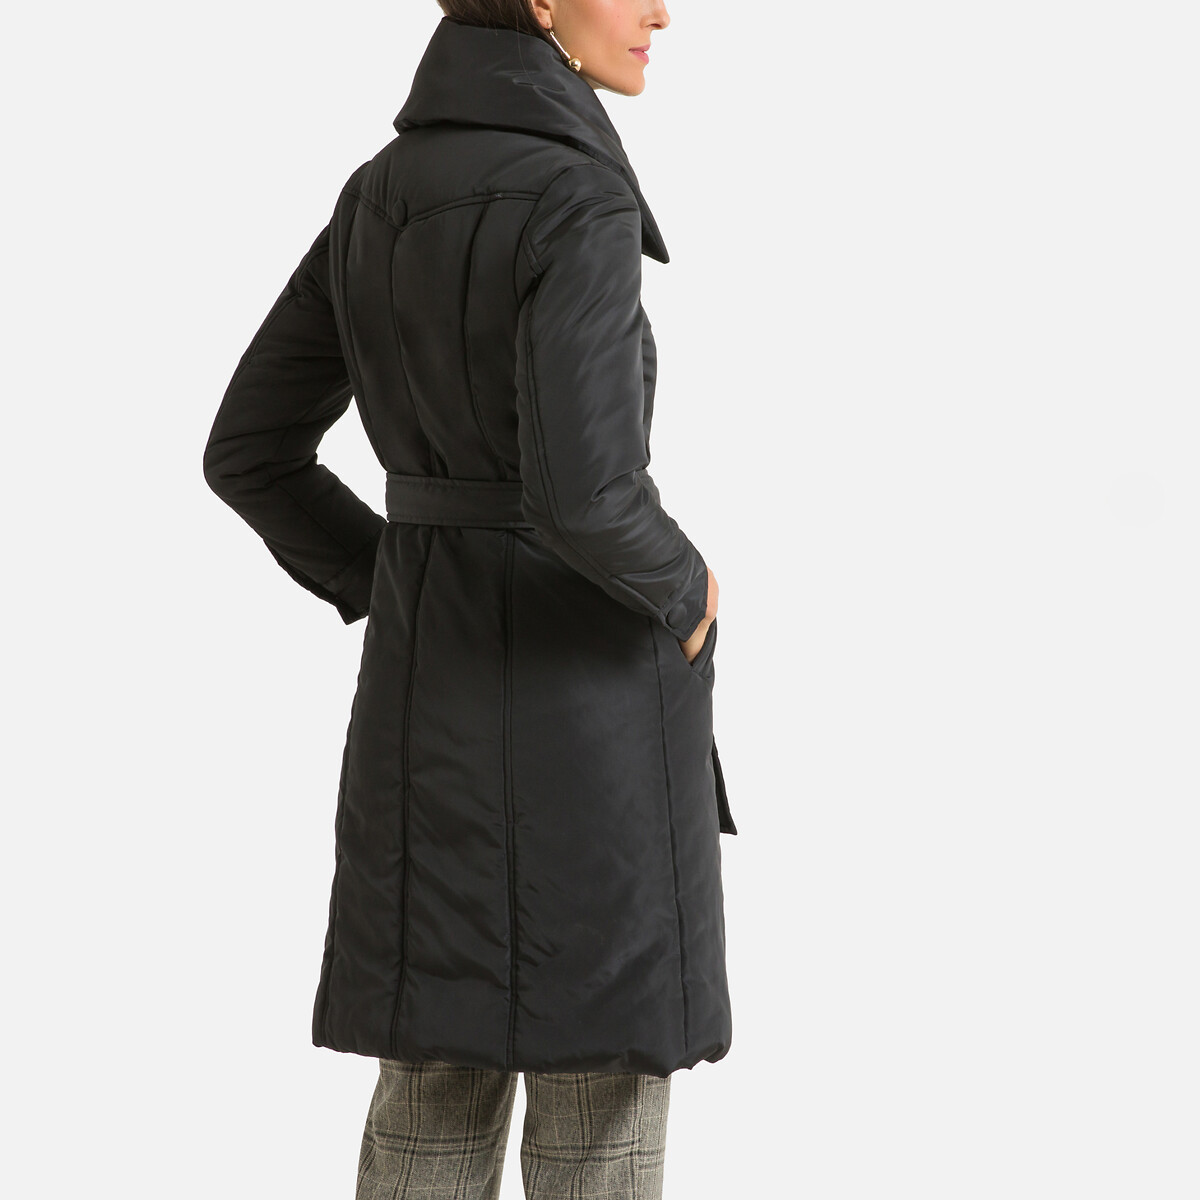 Куртка LaRedoute Стеганая с асимметричной застежкой 46 (FR) - 52 (RUS) черный, размер 46 (FR) - 52 (RUS) Стеганая с асимметричной застежкой 46 (FR) - 52 (RUS) черный - фото 4